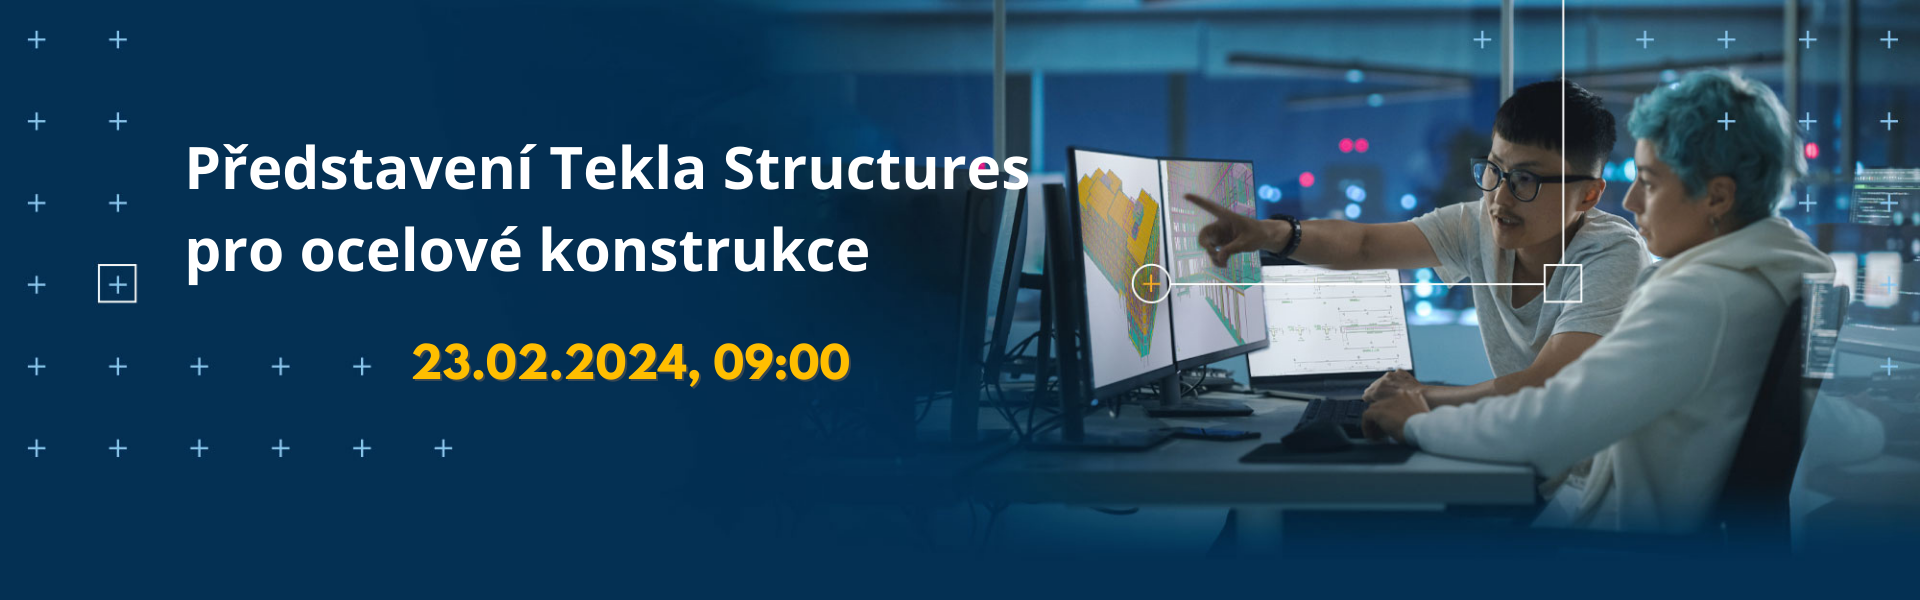 Představení Tekla Structures pro ocelové konstrukce (23.02.2024)